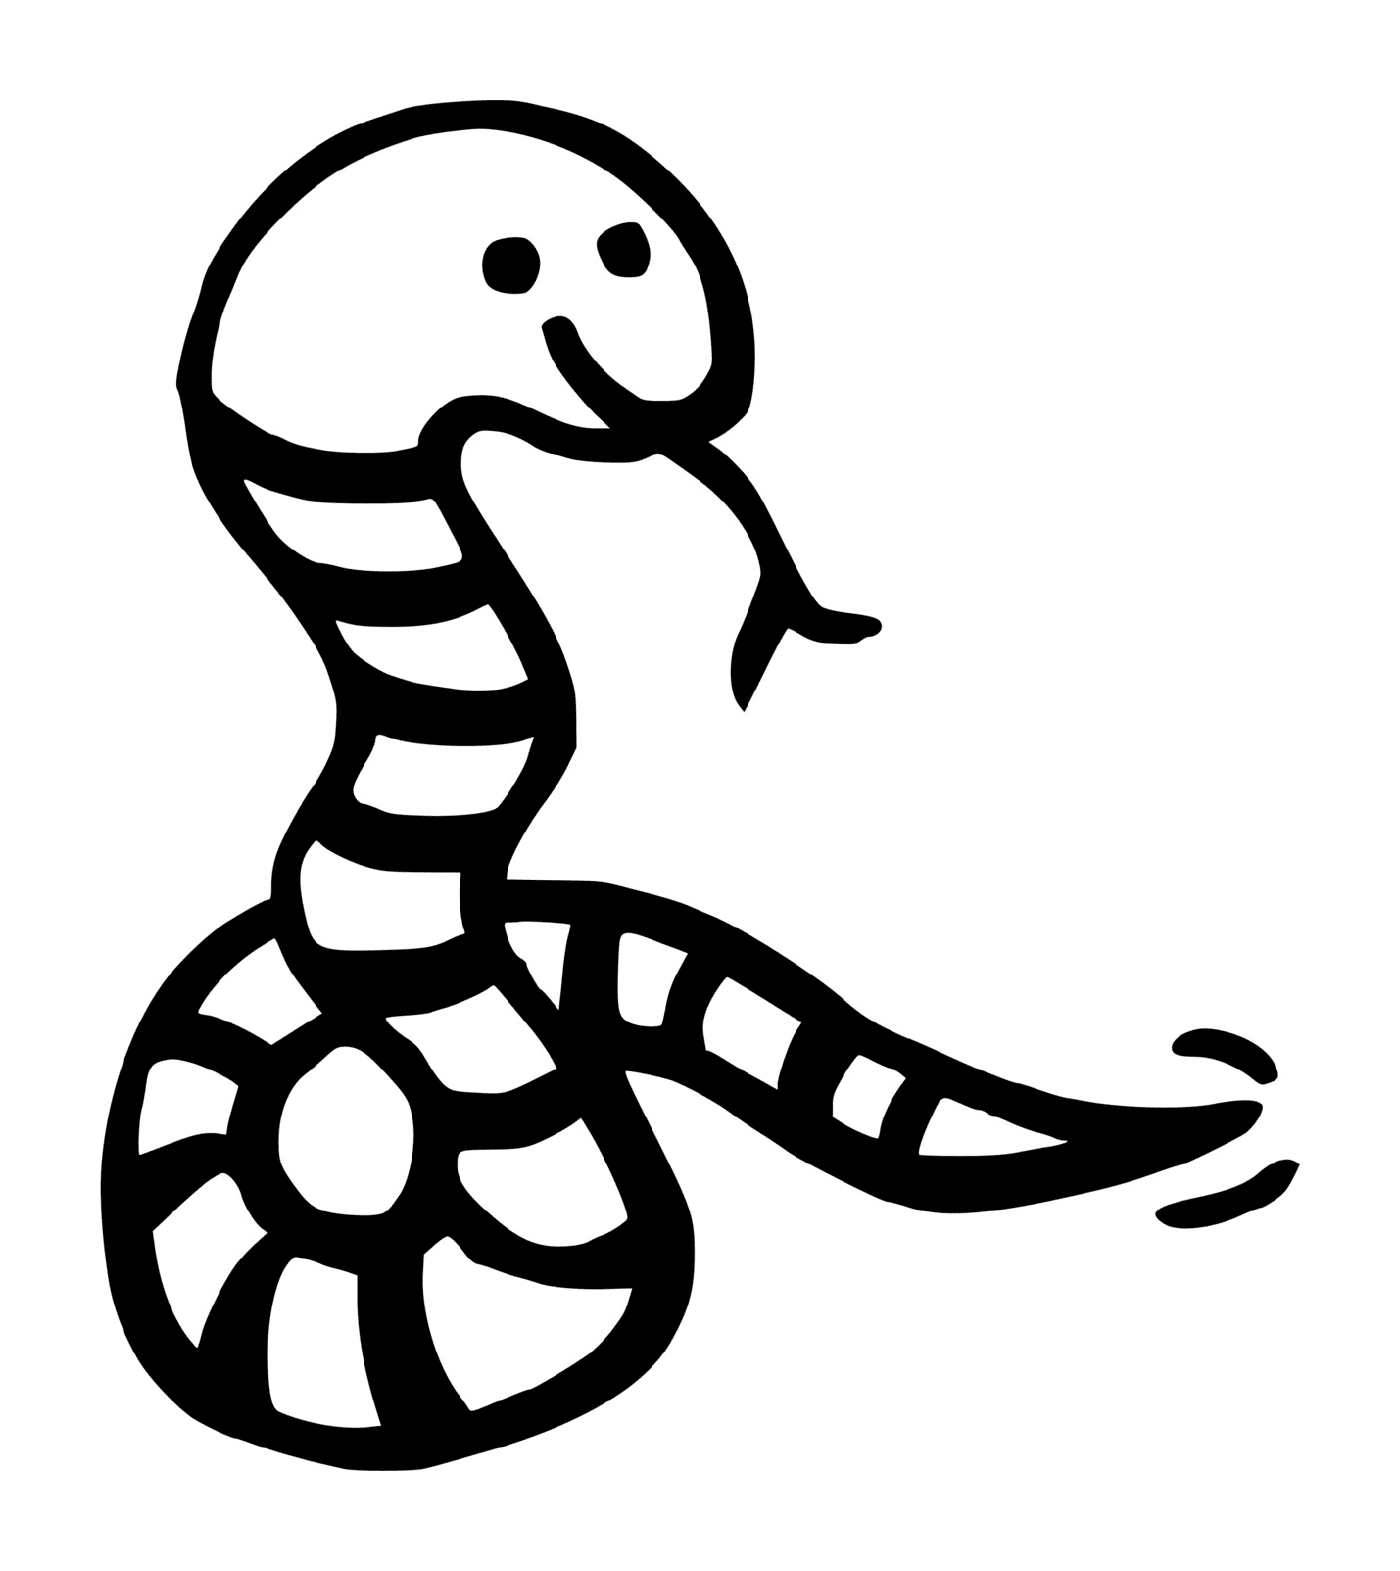  A snake 